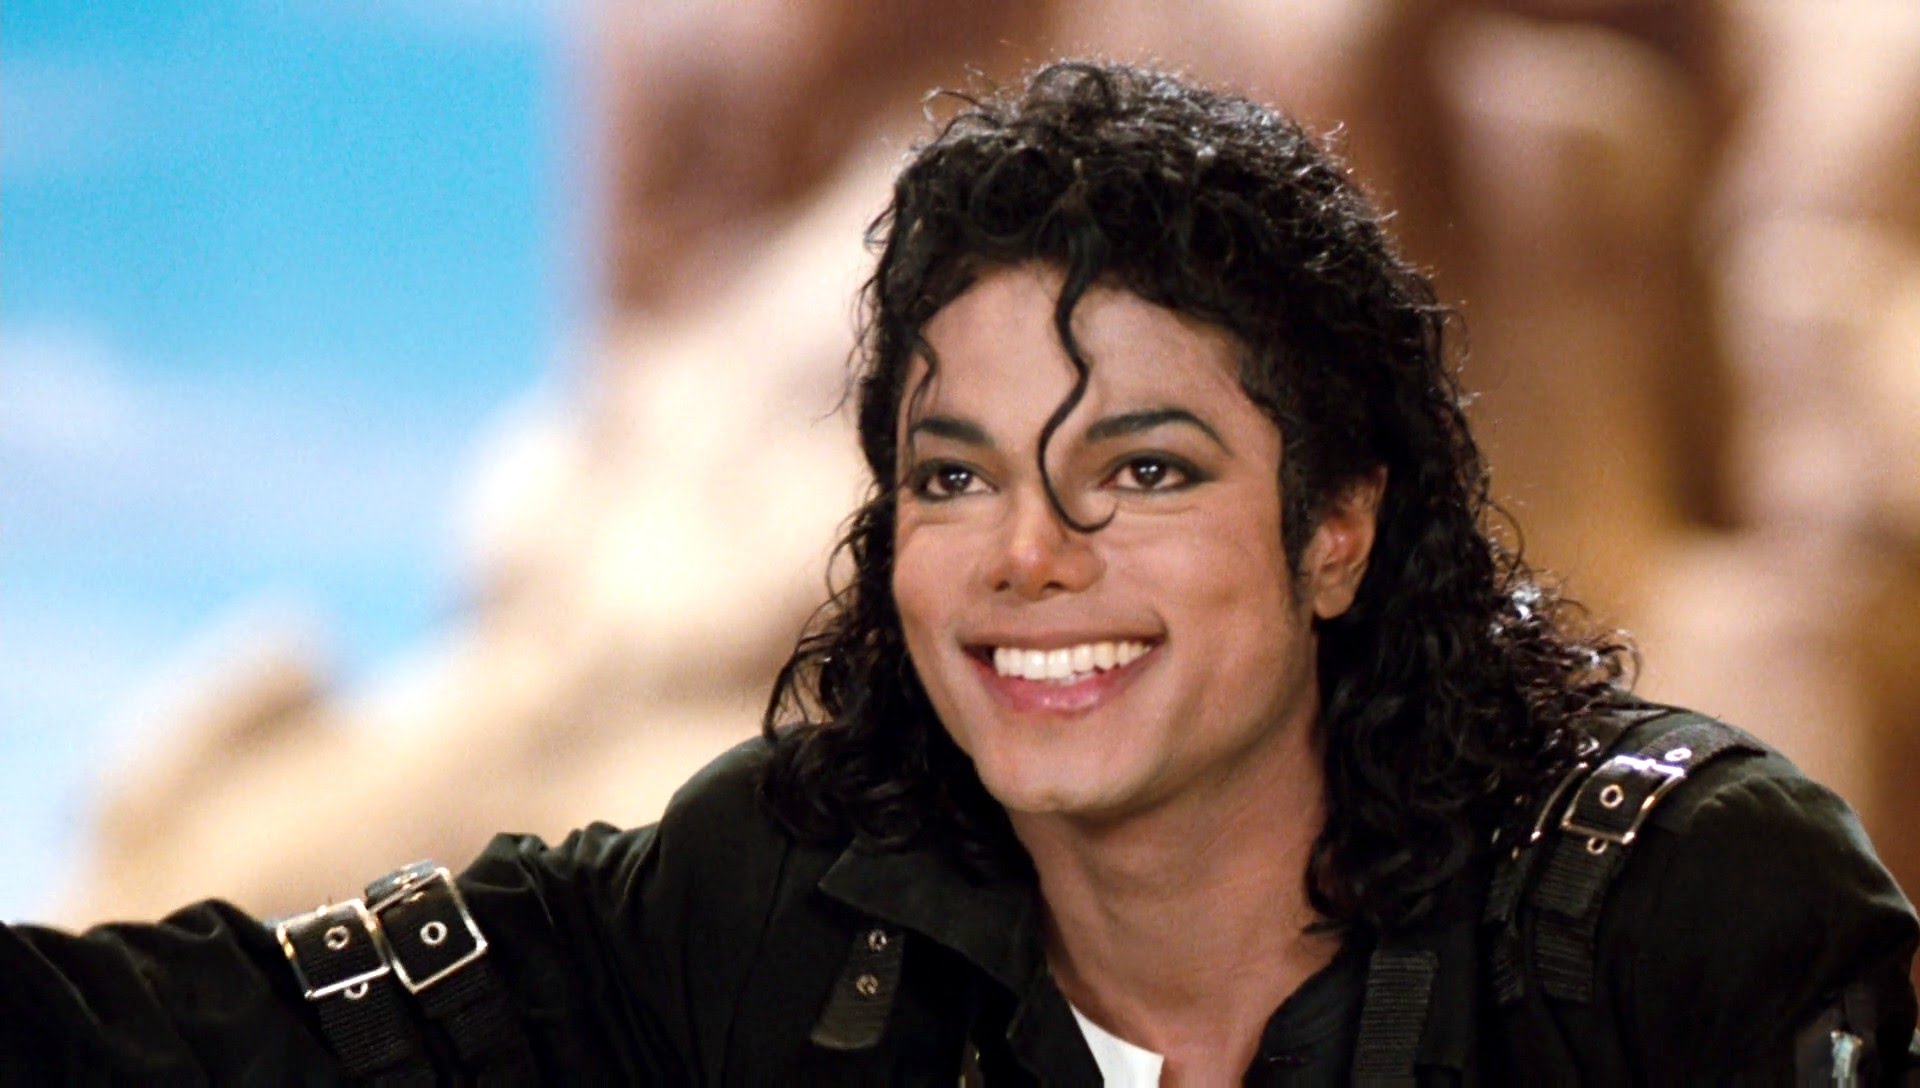 Sony publicó canciones falsas de Michael Jackson